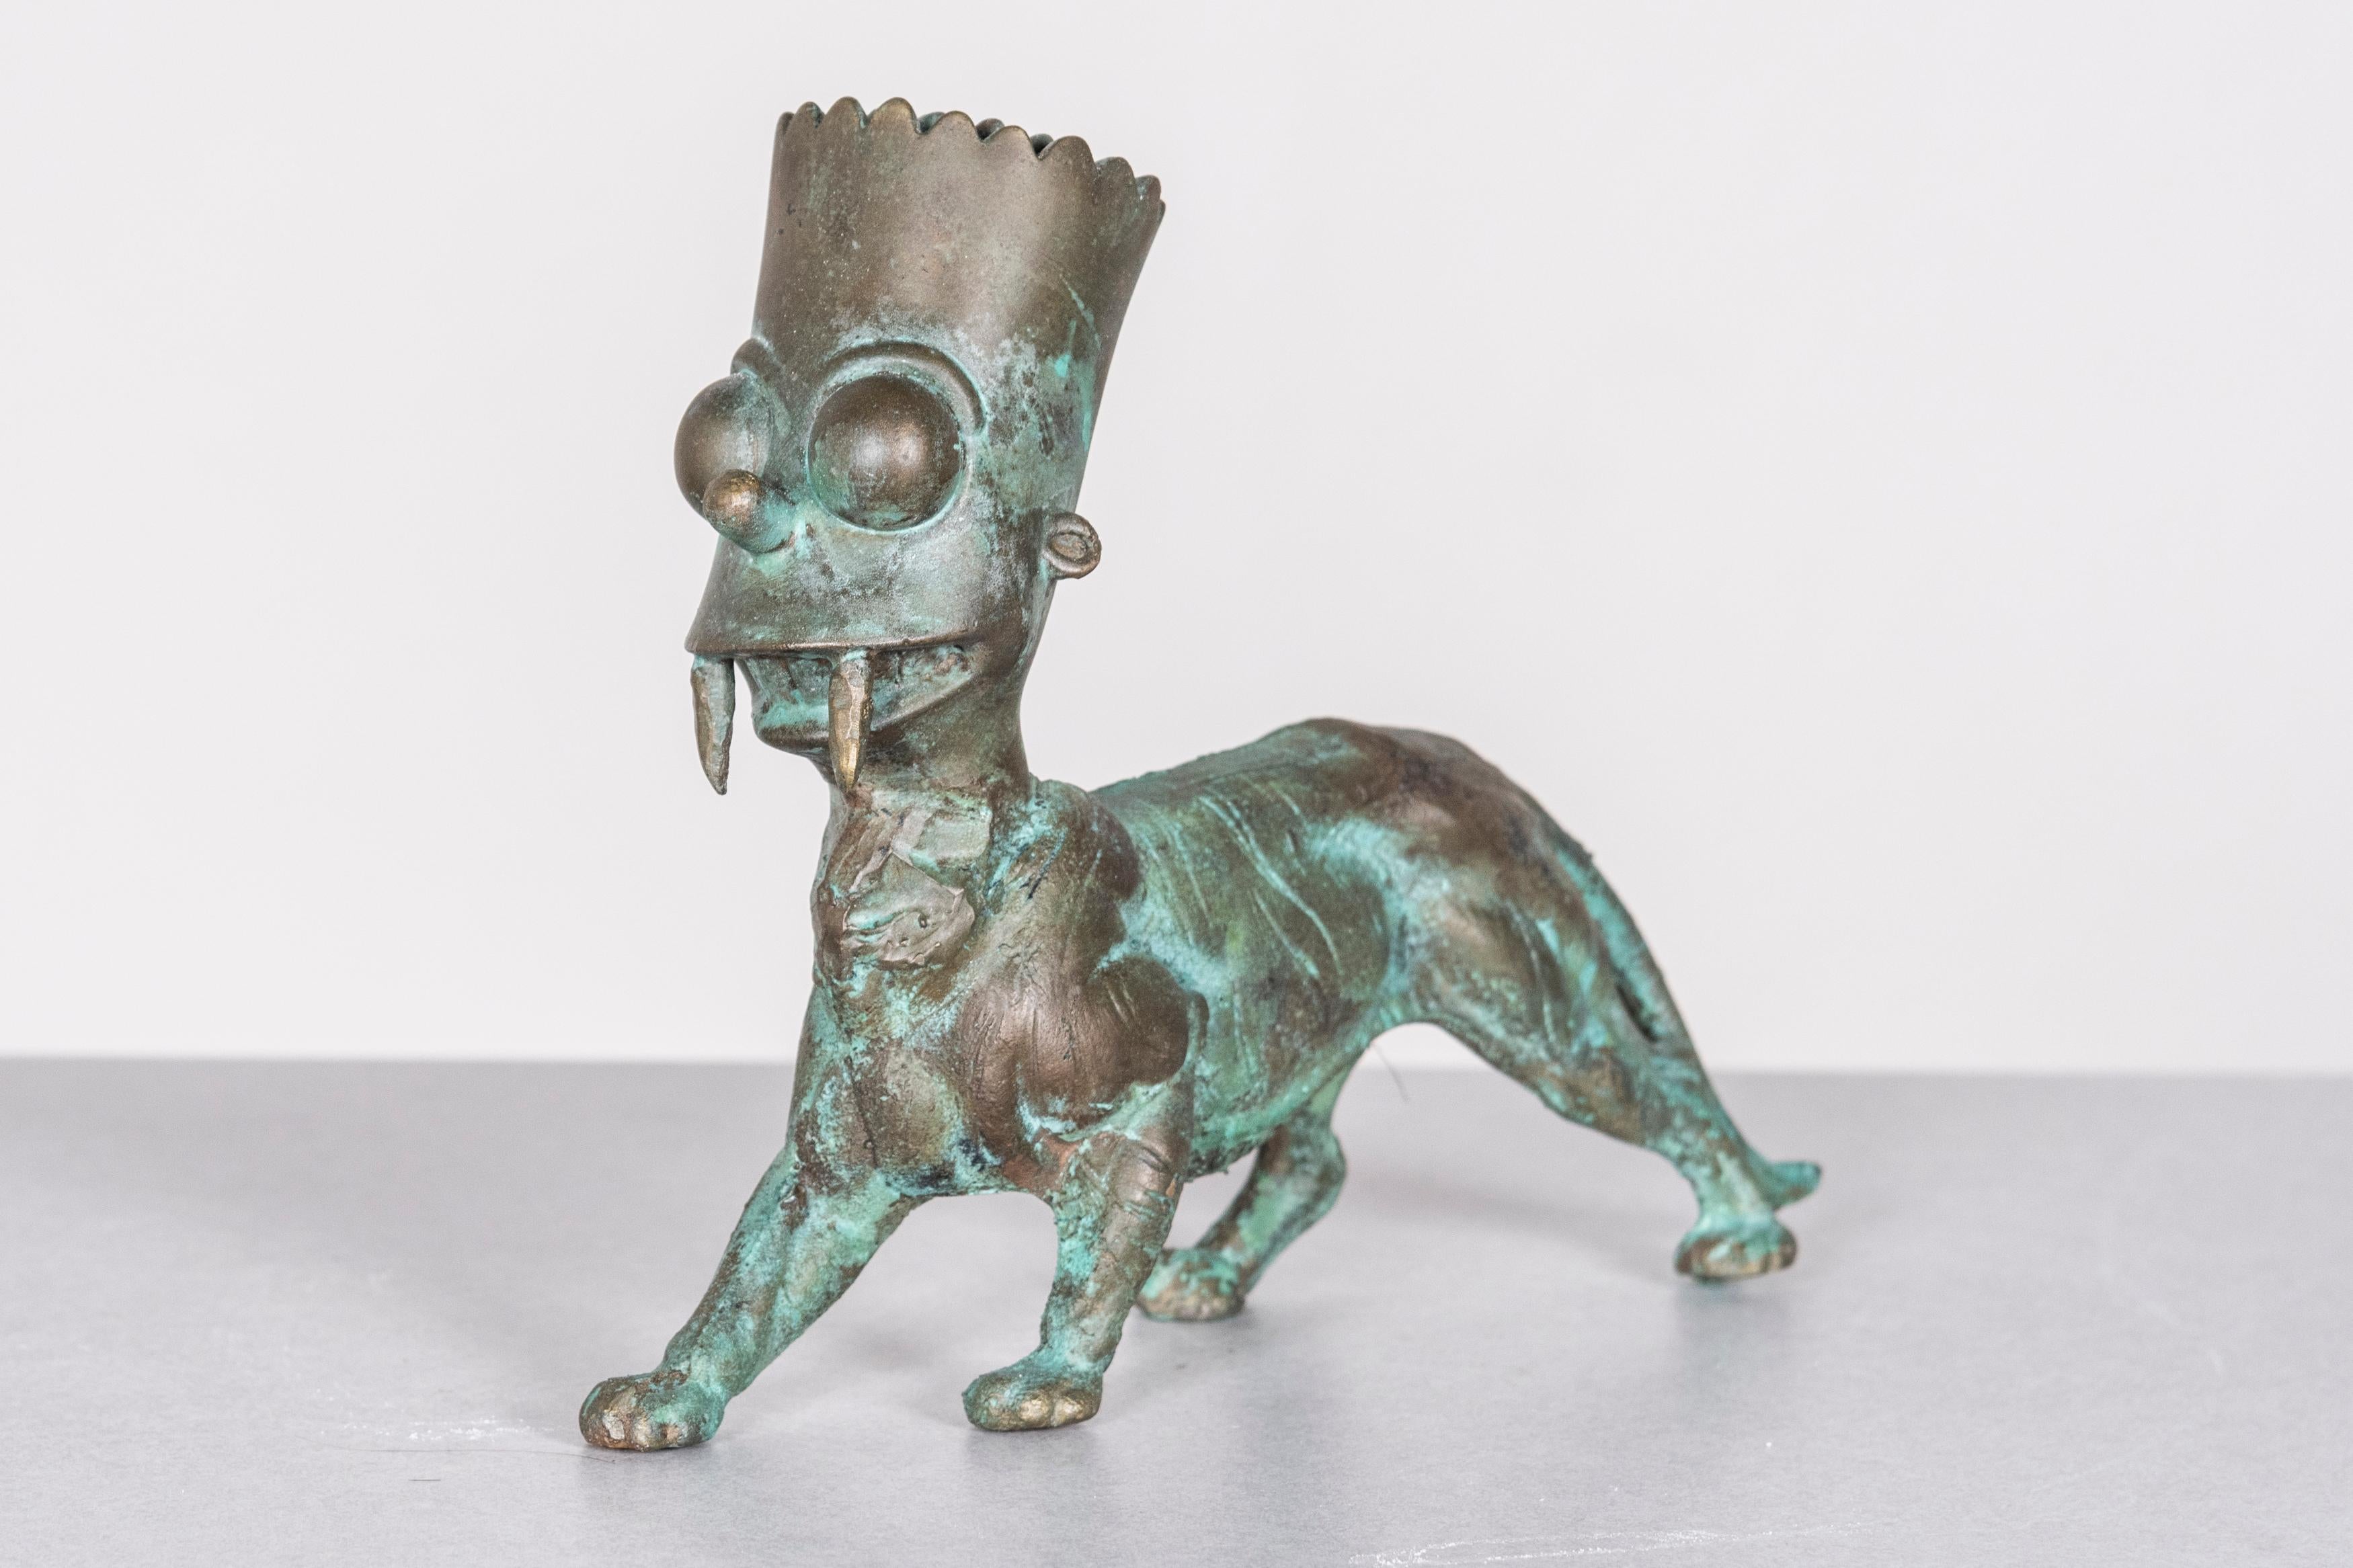 Figurative Sculpture Joshua Goode - Bart Simpson, Sculpture en bronze : Chat aux dents de barbier